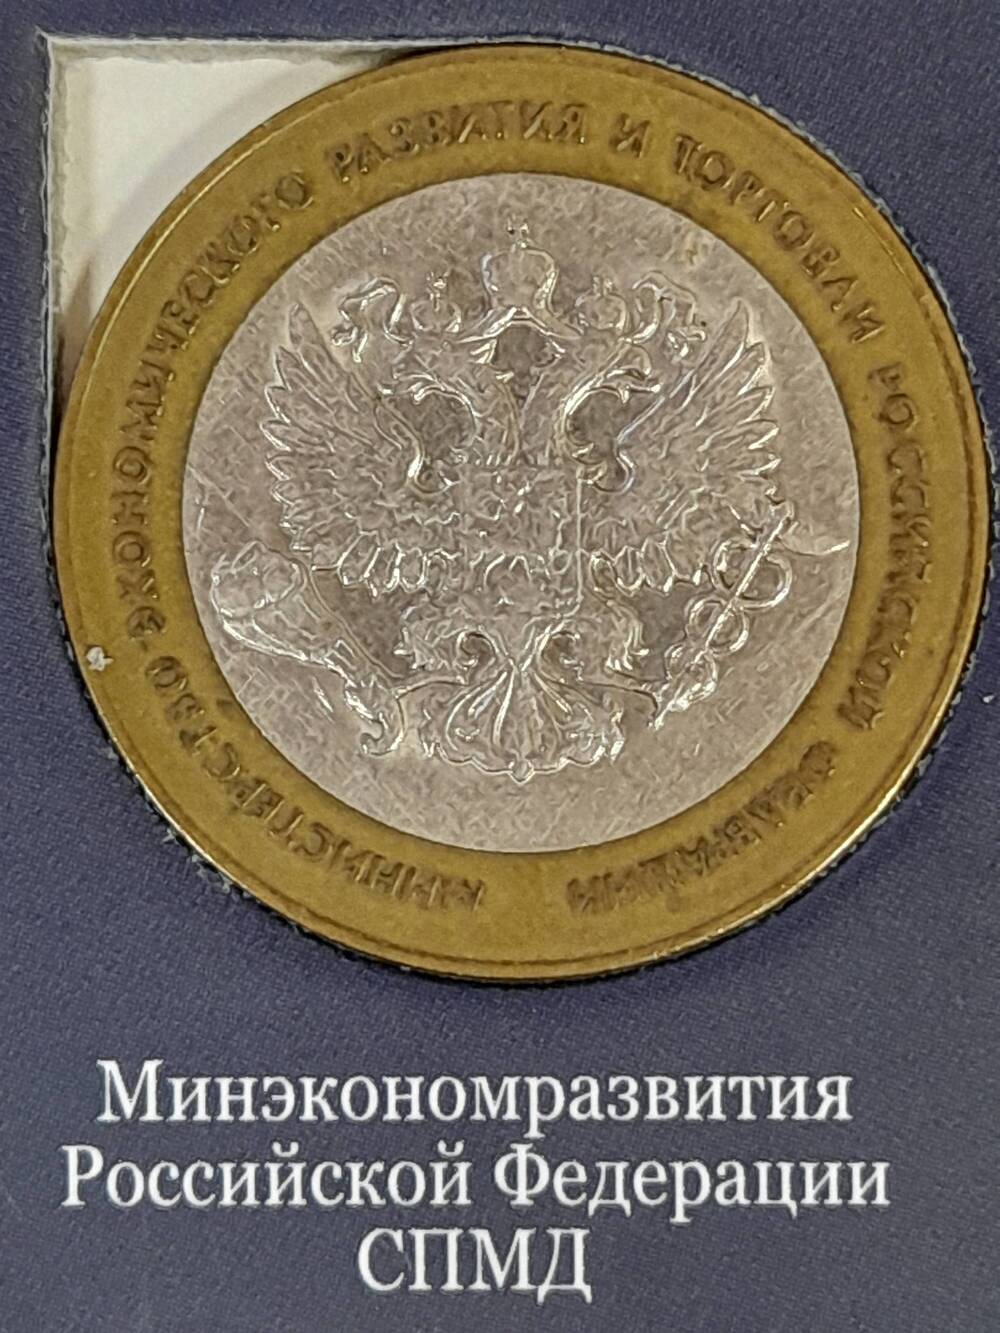 Монета памятная 10 РУБЛЕЙ. Минэкономразвития Российской Федерации 2002 г. Россия